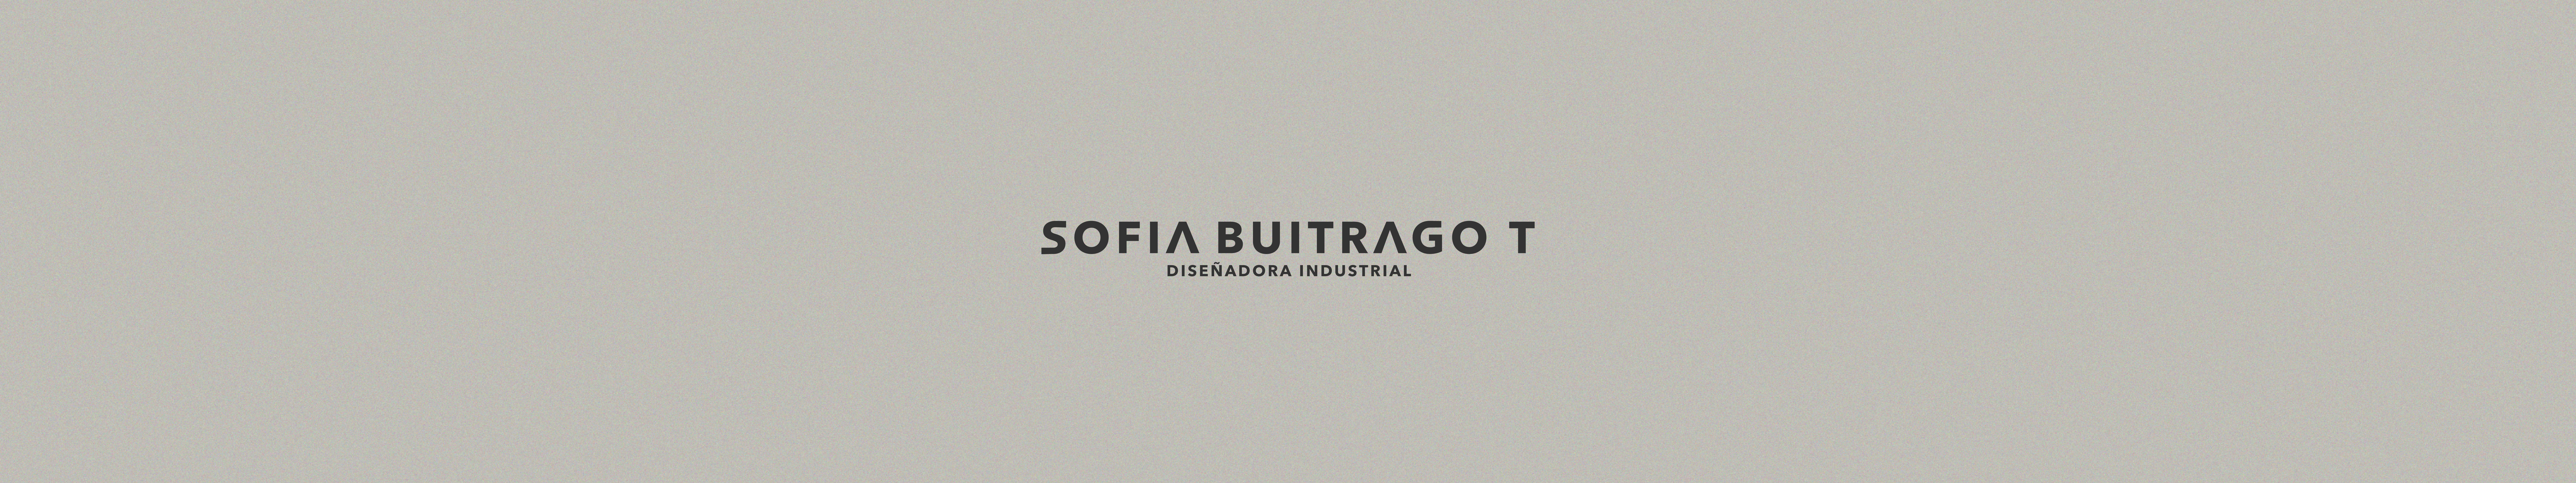 Sofia Buitrago Tapiass profilbanner